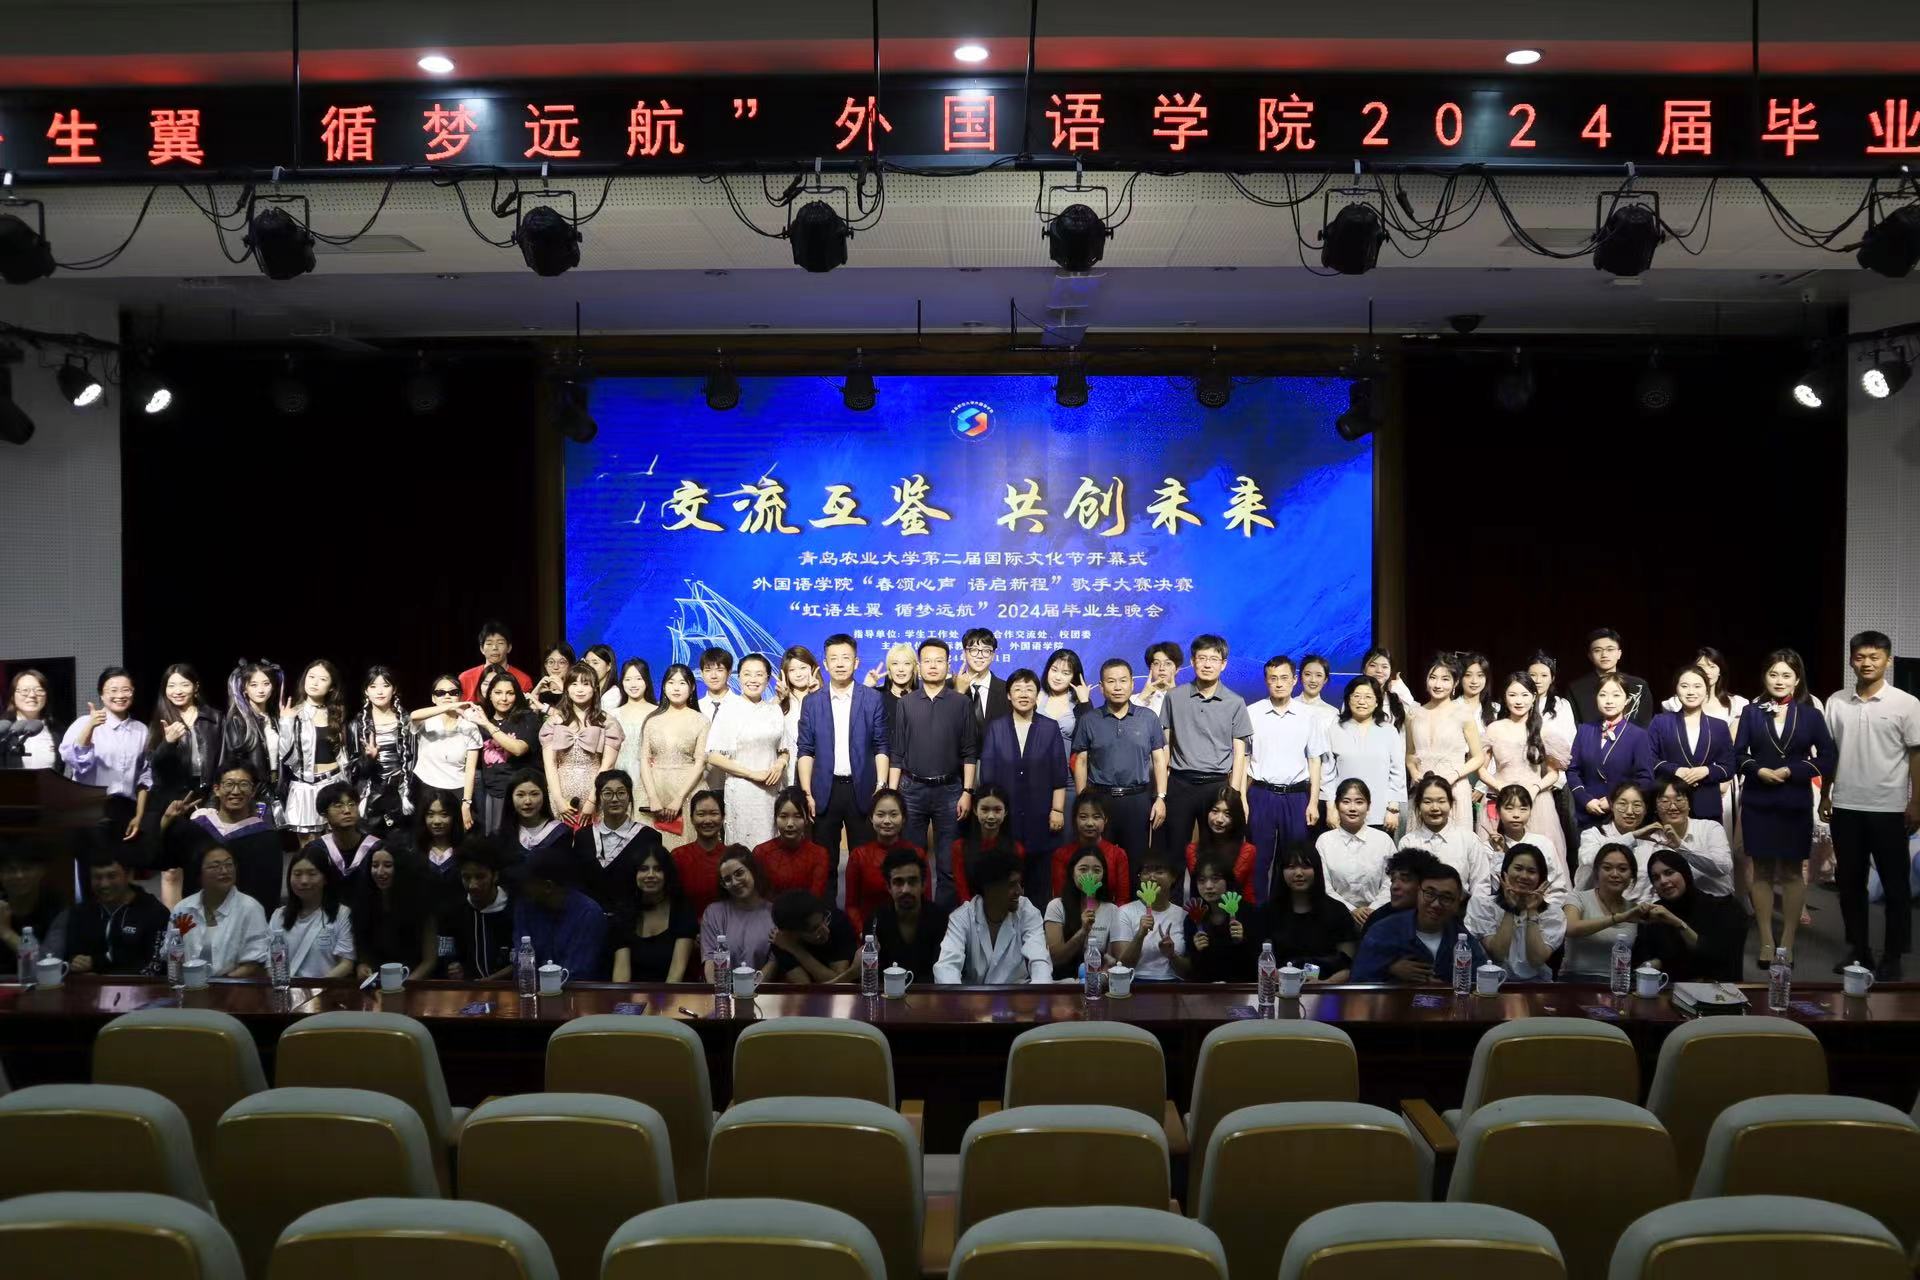 青岛农业大学第二届国际文化节开幕式暨外国语学院虹语生翼,循梦远航